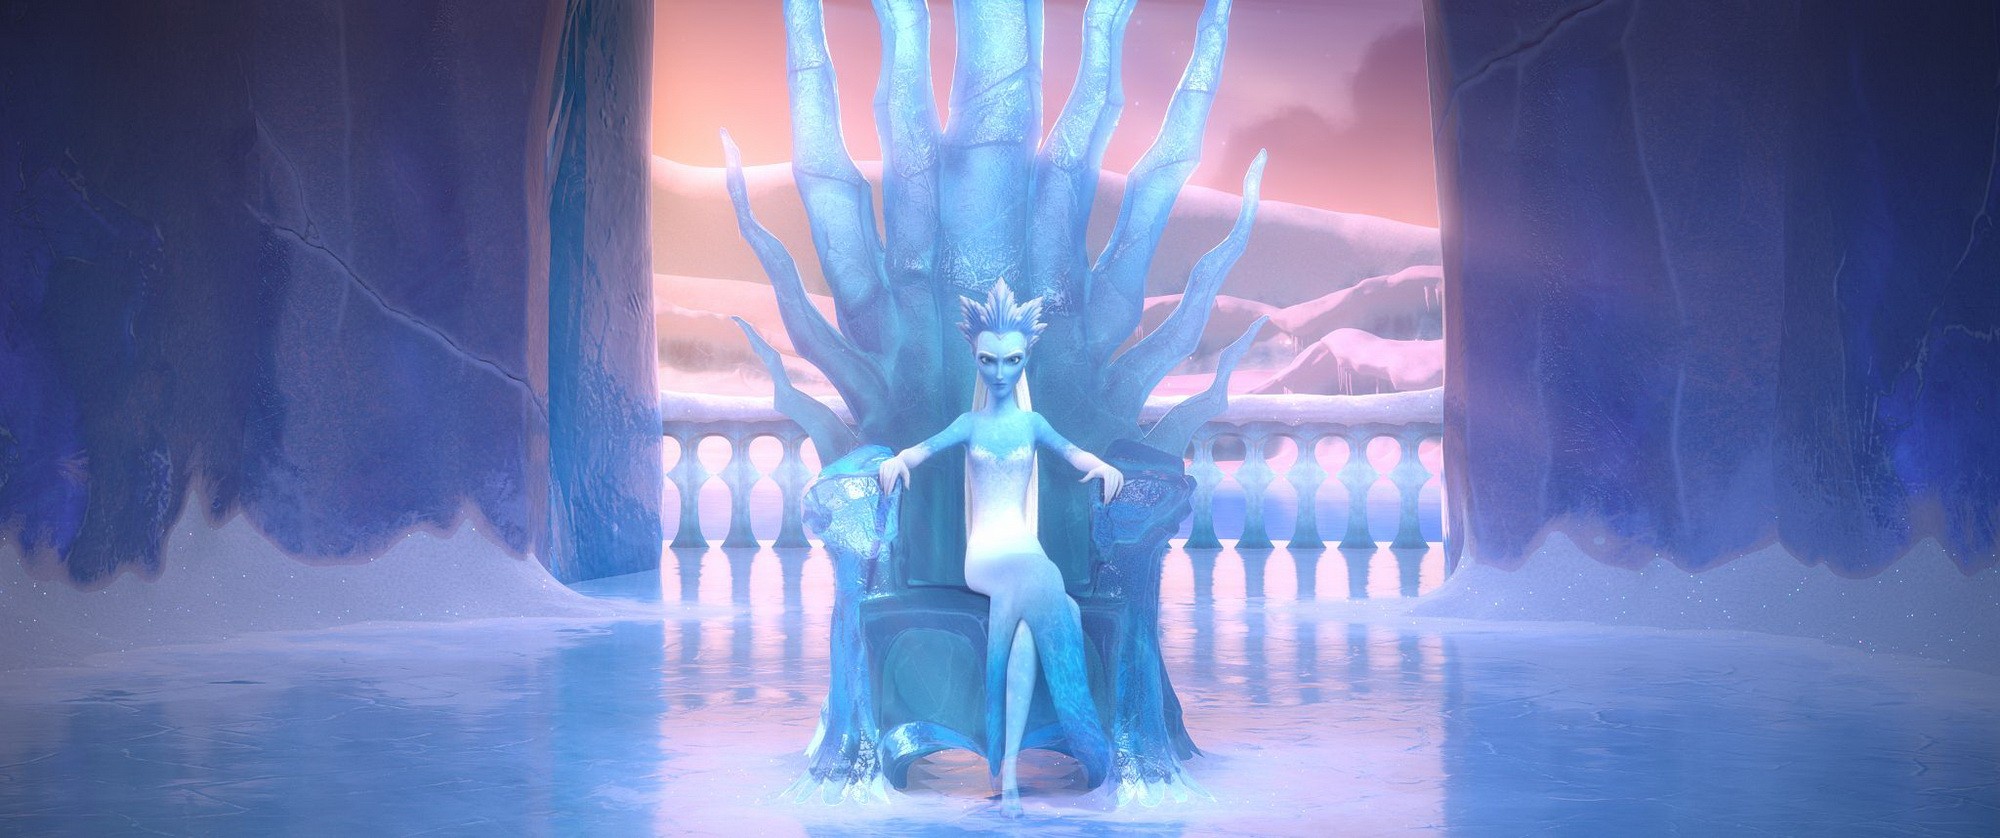 Снежная королева: Разморозка: кадр N212033